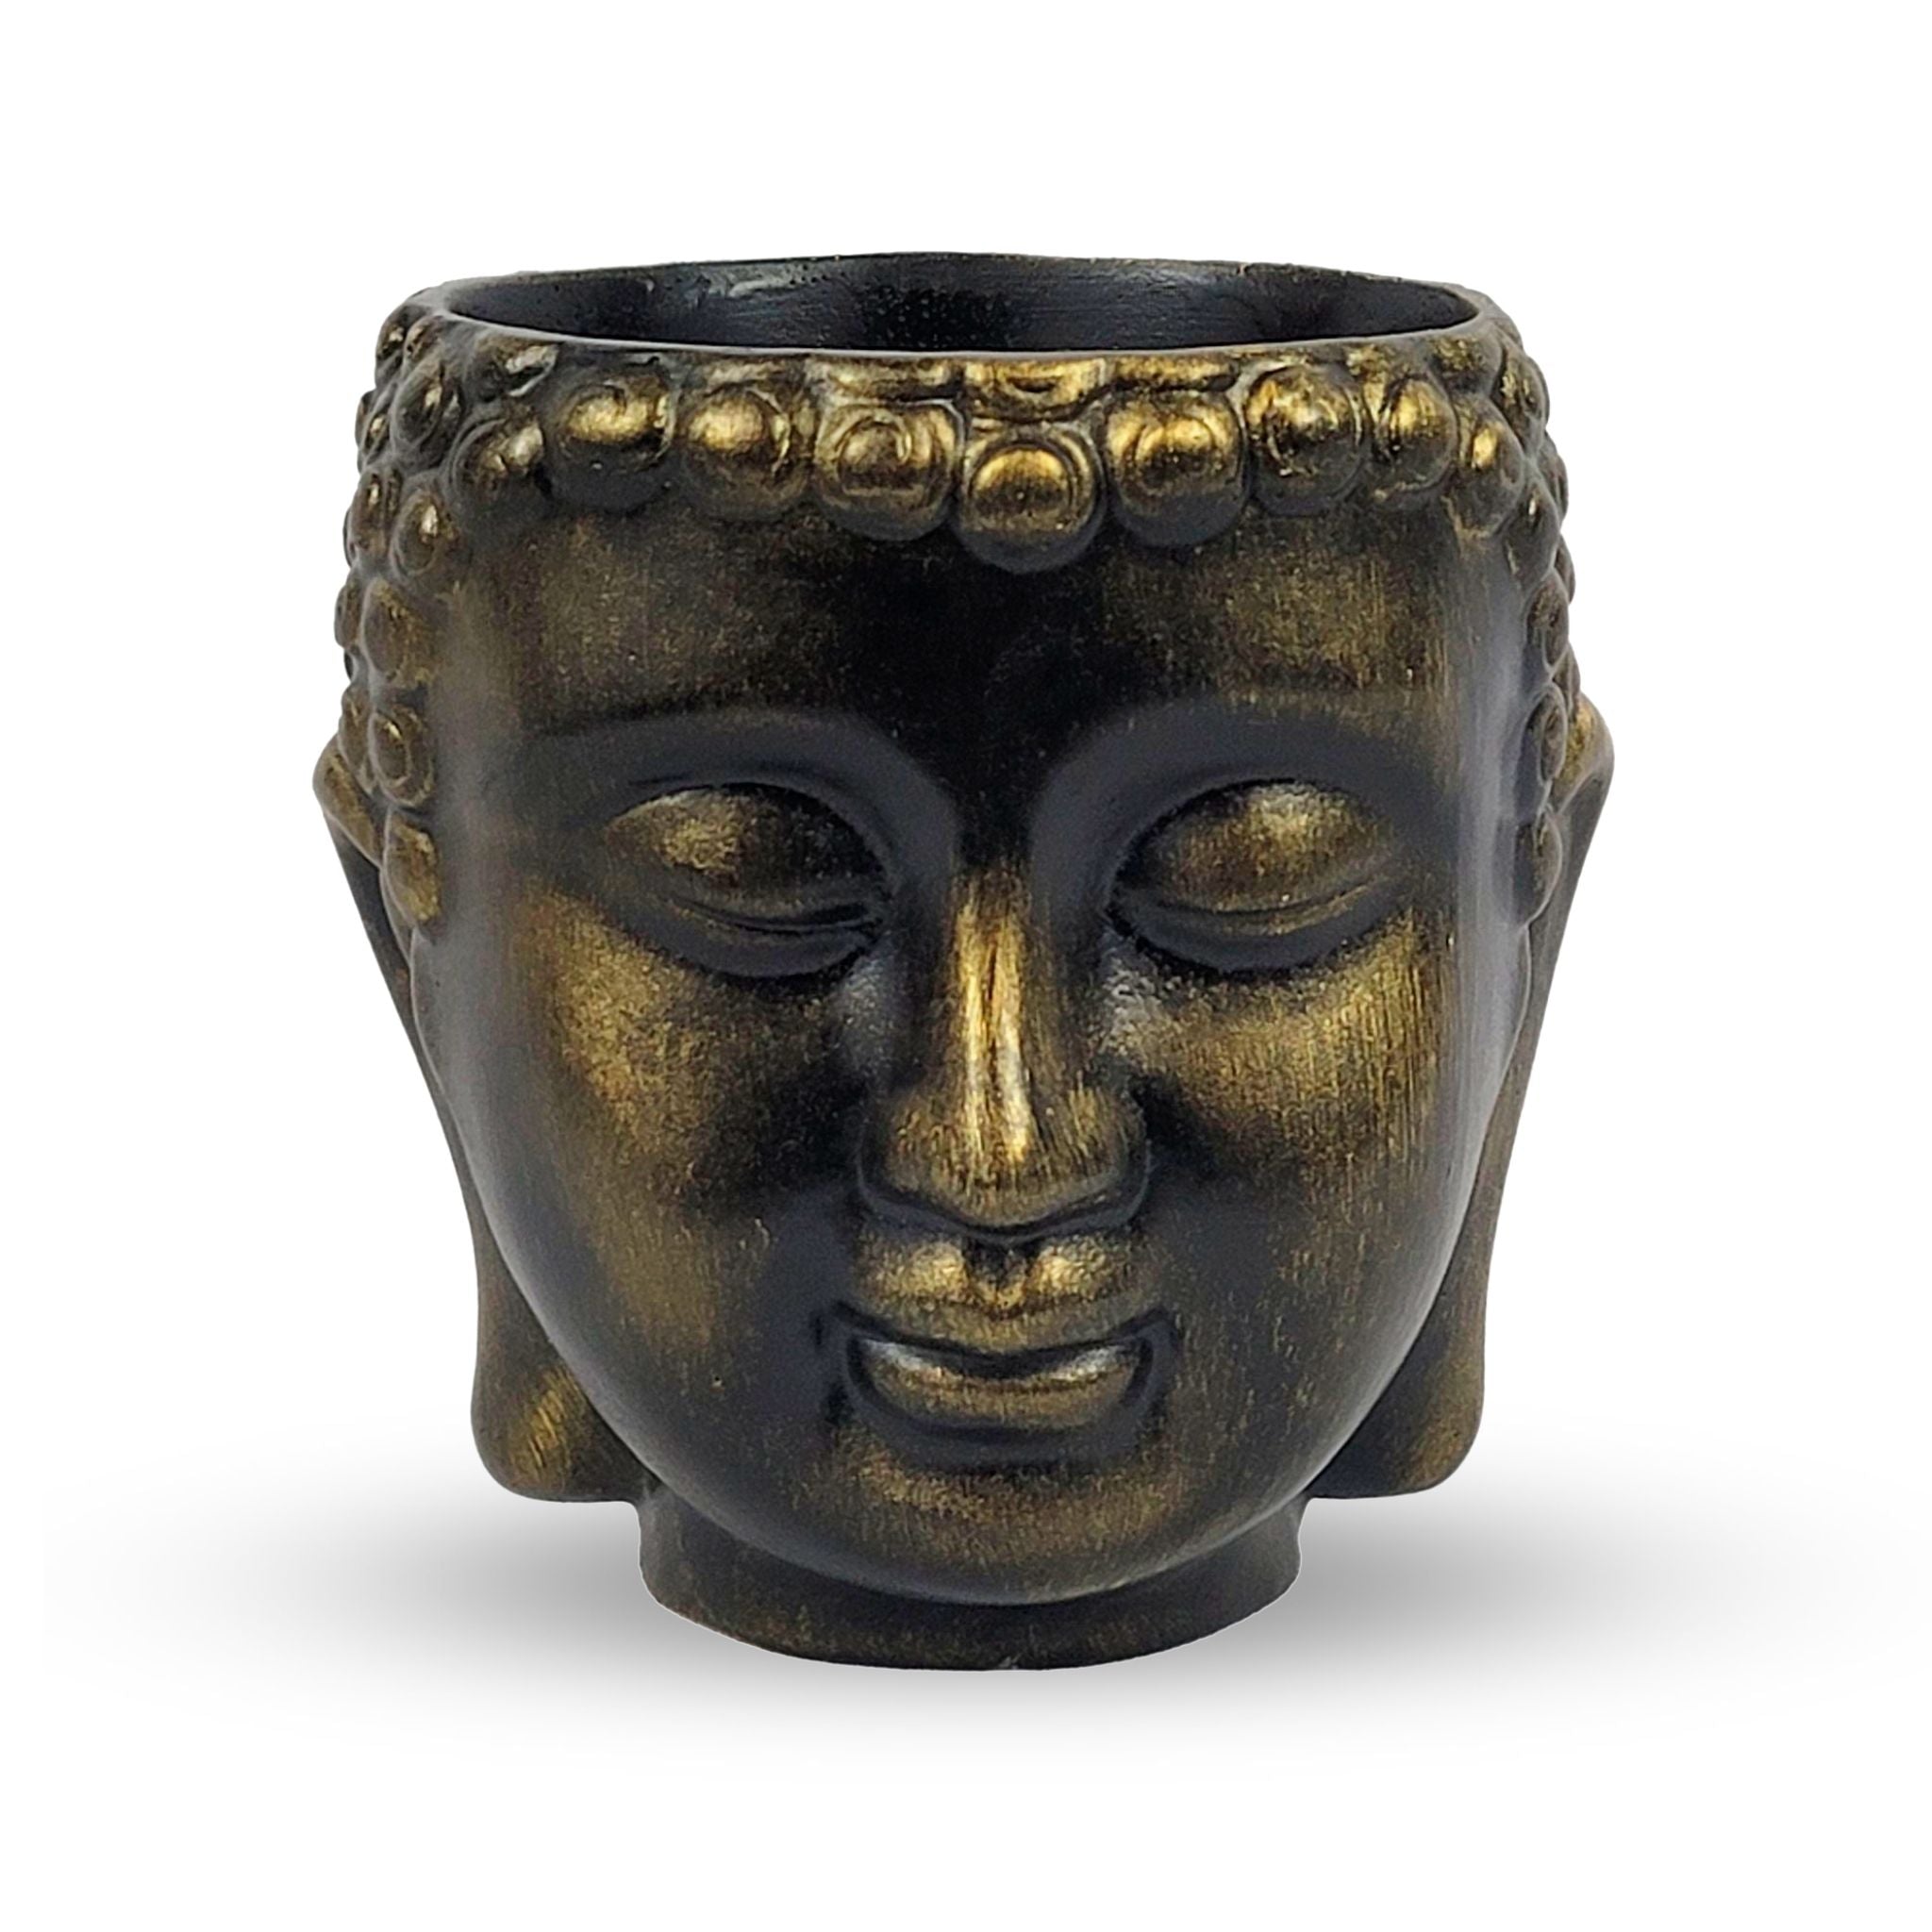 Meditating Buddha Planter - Black Gold